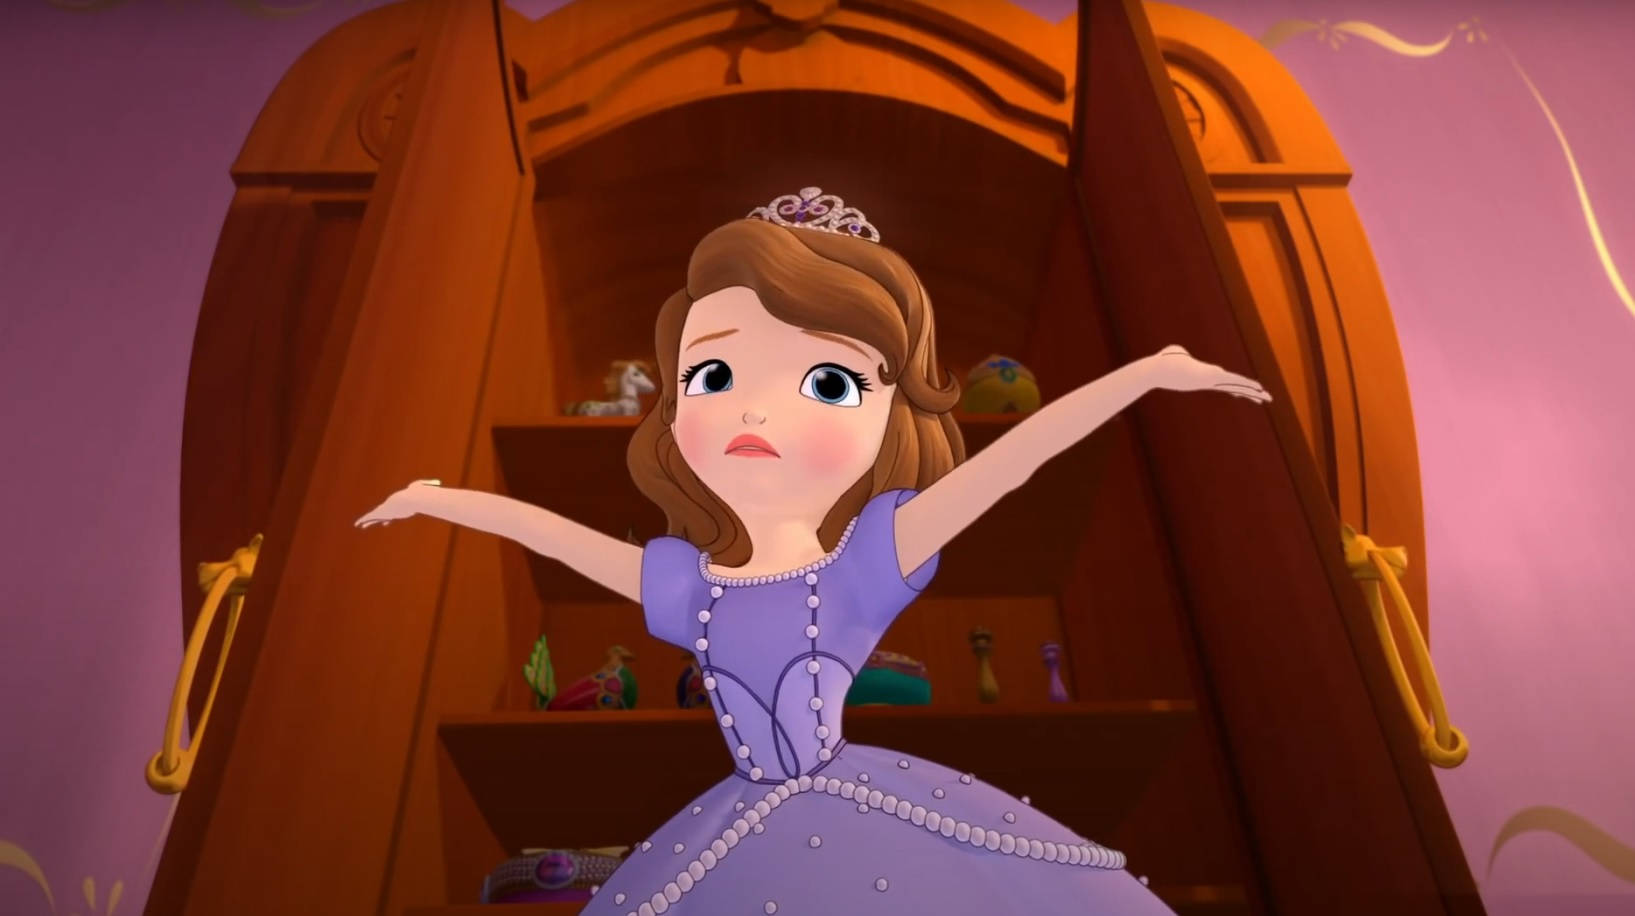 Princess Sofia Open Arms Pose Background